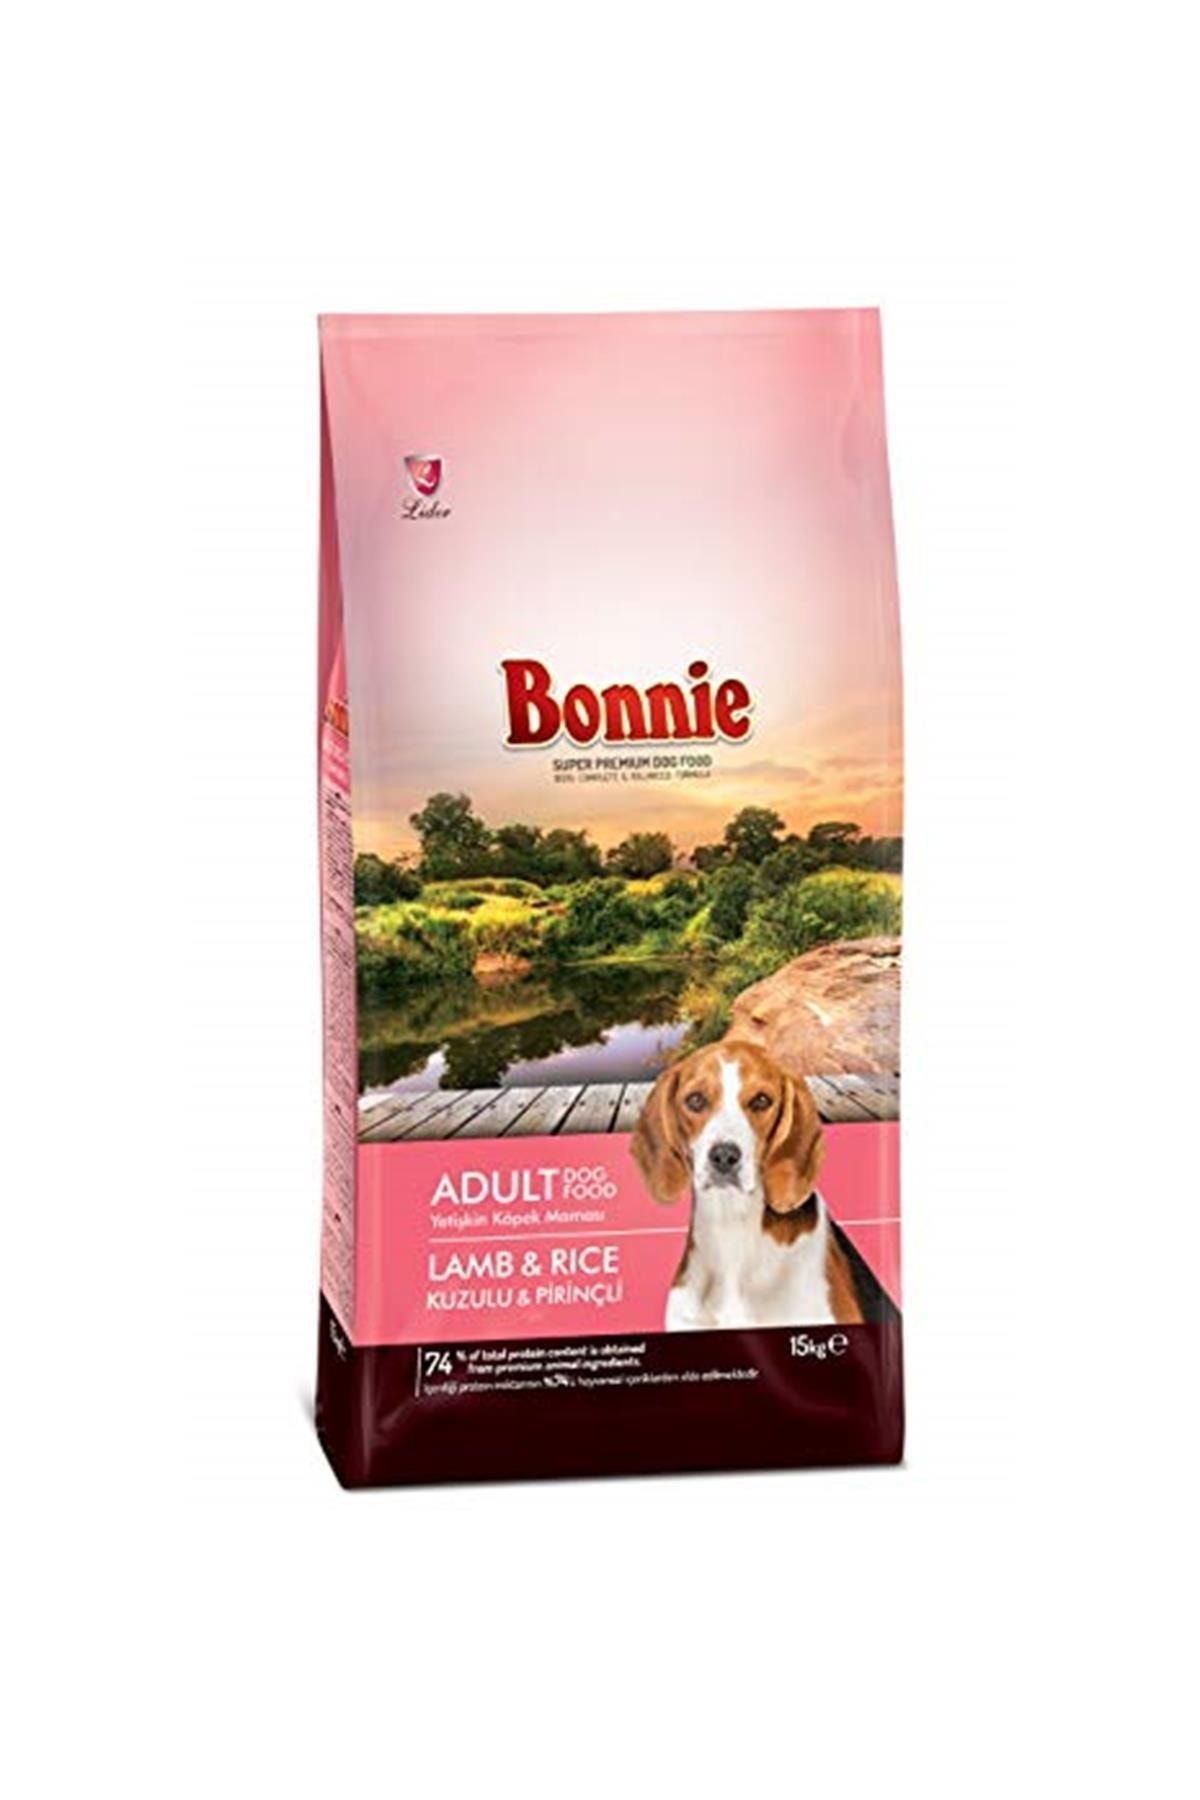 Bonnie Adult Dog 23/12 L&r 15 Kg